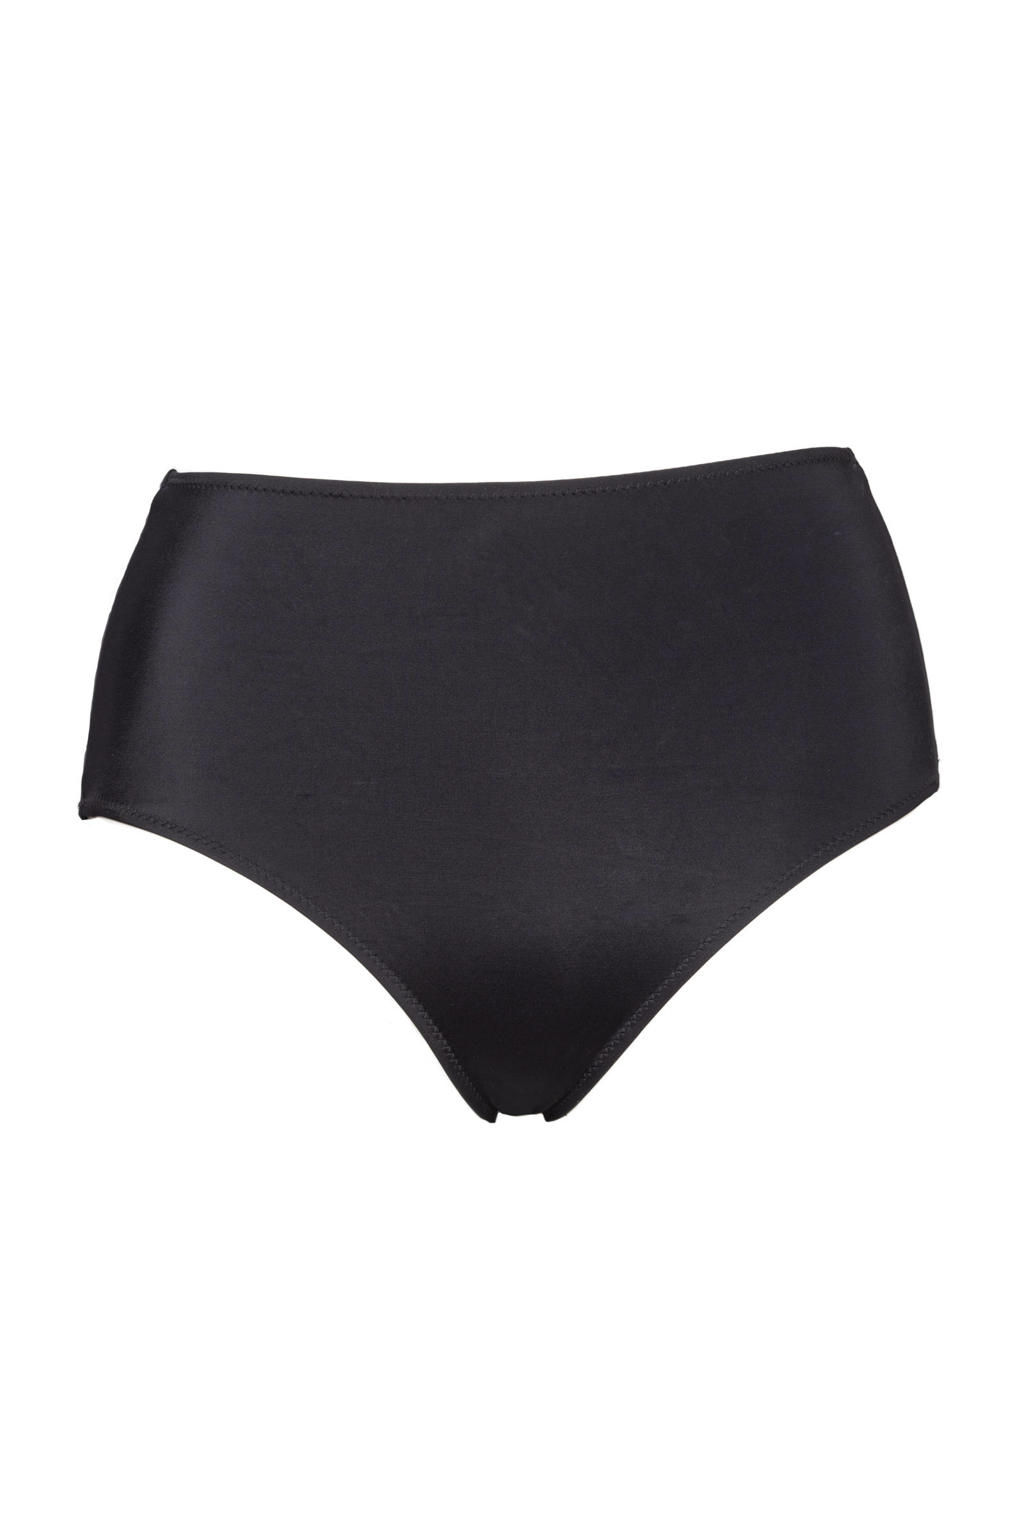 Plaisir +size high waist bikinibroekje zwart